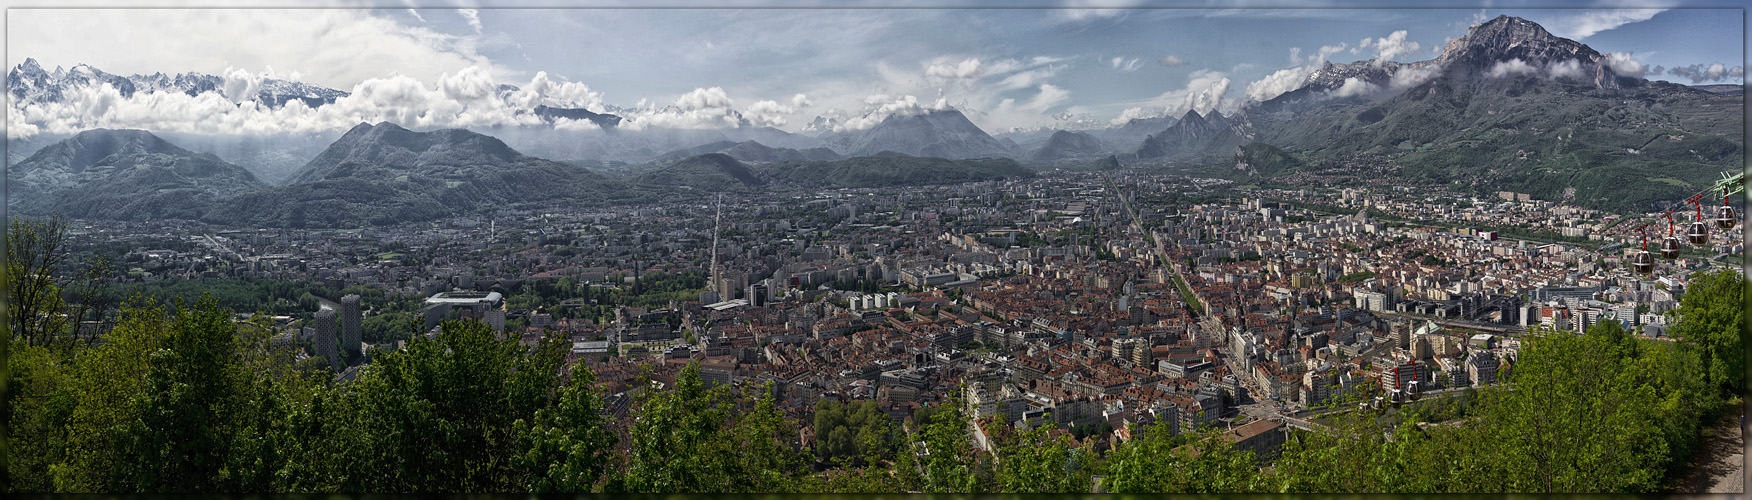 Grenoble - links der Seilbahn